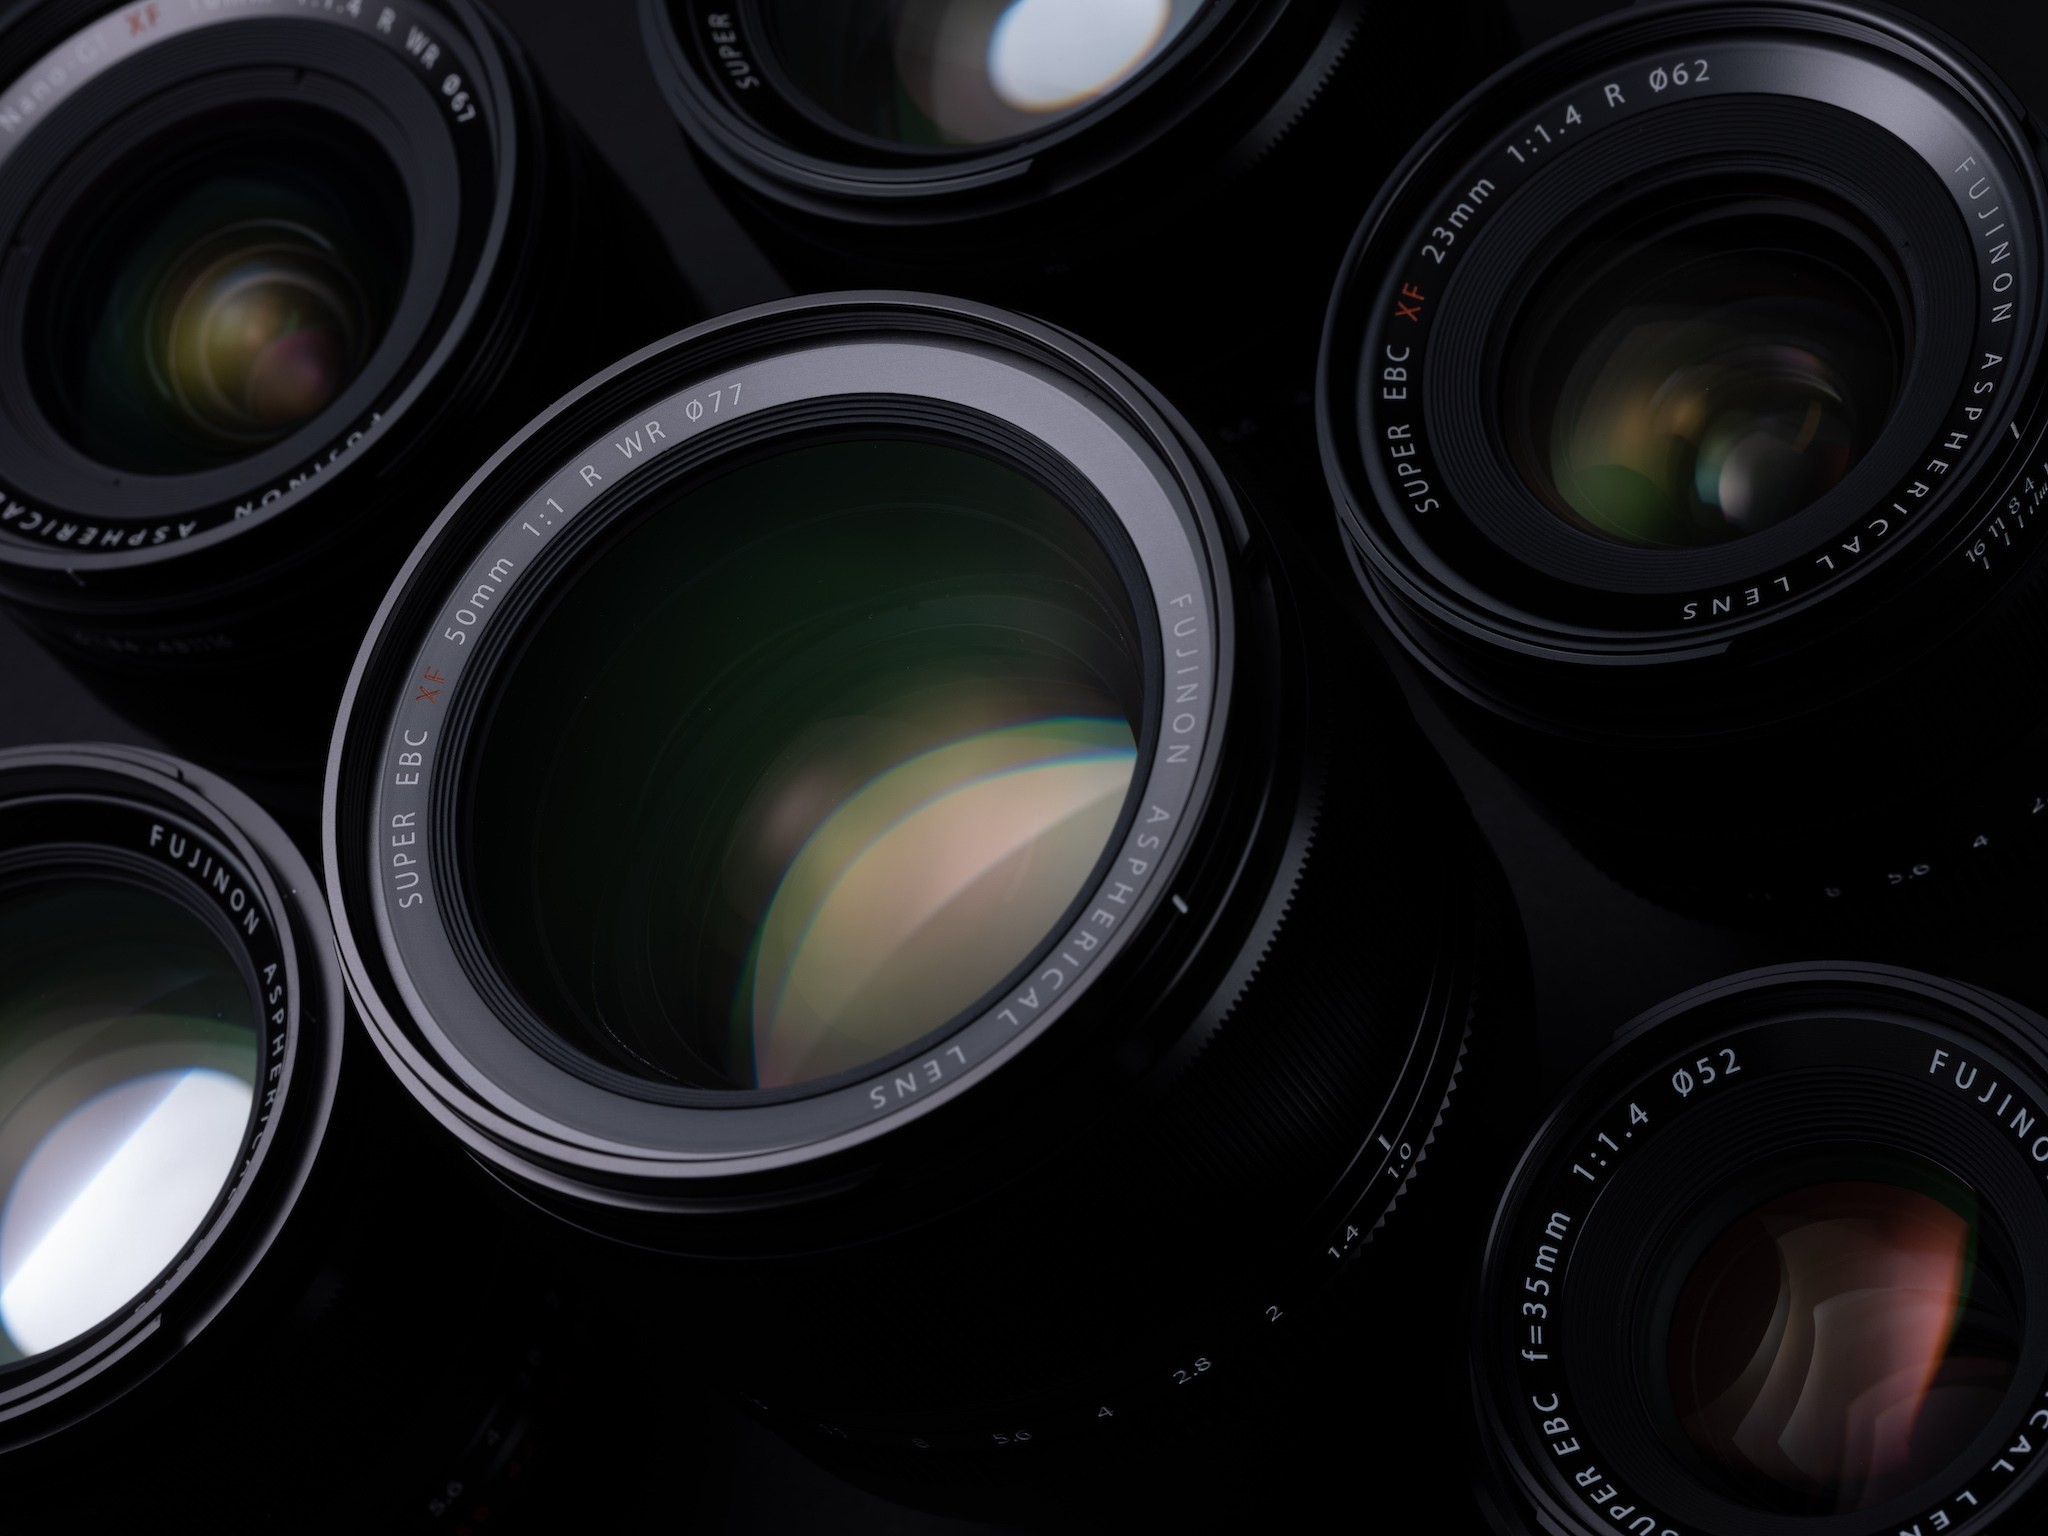 Fujifilm cập nhật firmware hỗ trợ ống kính 50mm F1.0 mới cho loạt máy ảnh X-T4, X-T3, X-T2, X-T1, X-H1, X-Pro3, X-Pro2, X-Pro1, X-E3, X-T20 và X-T30